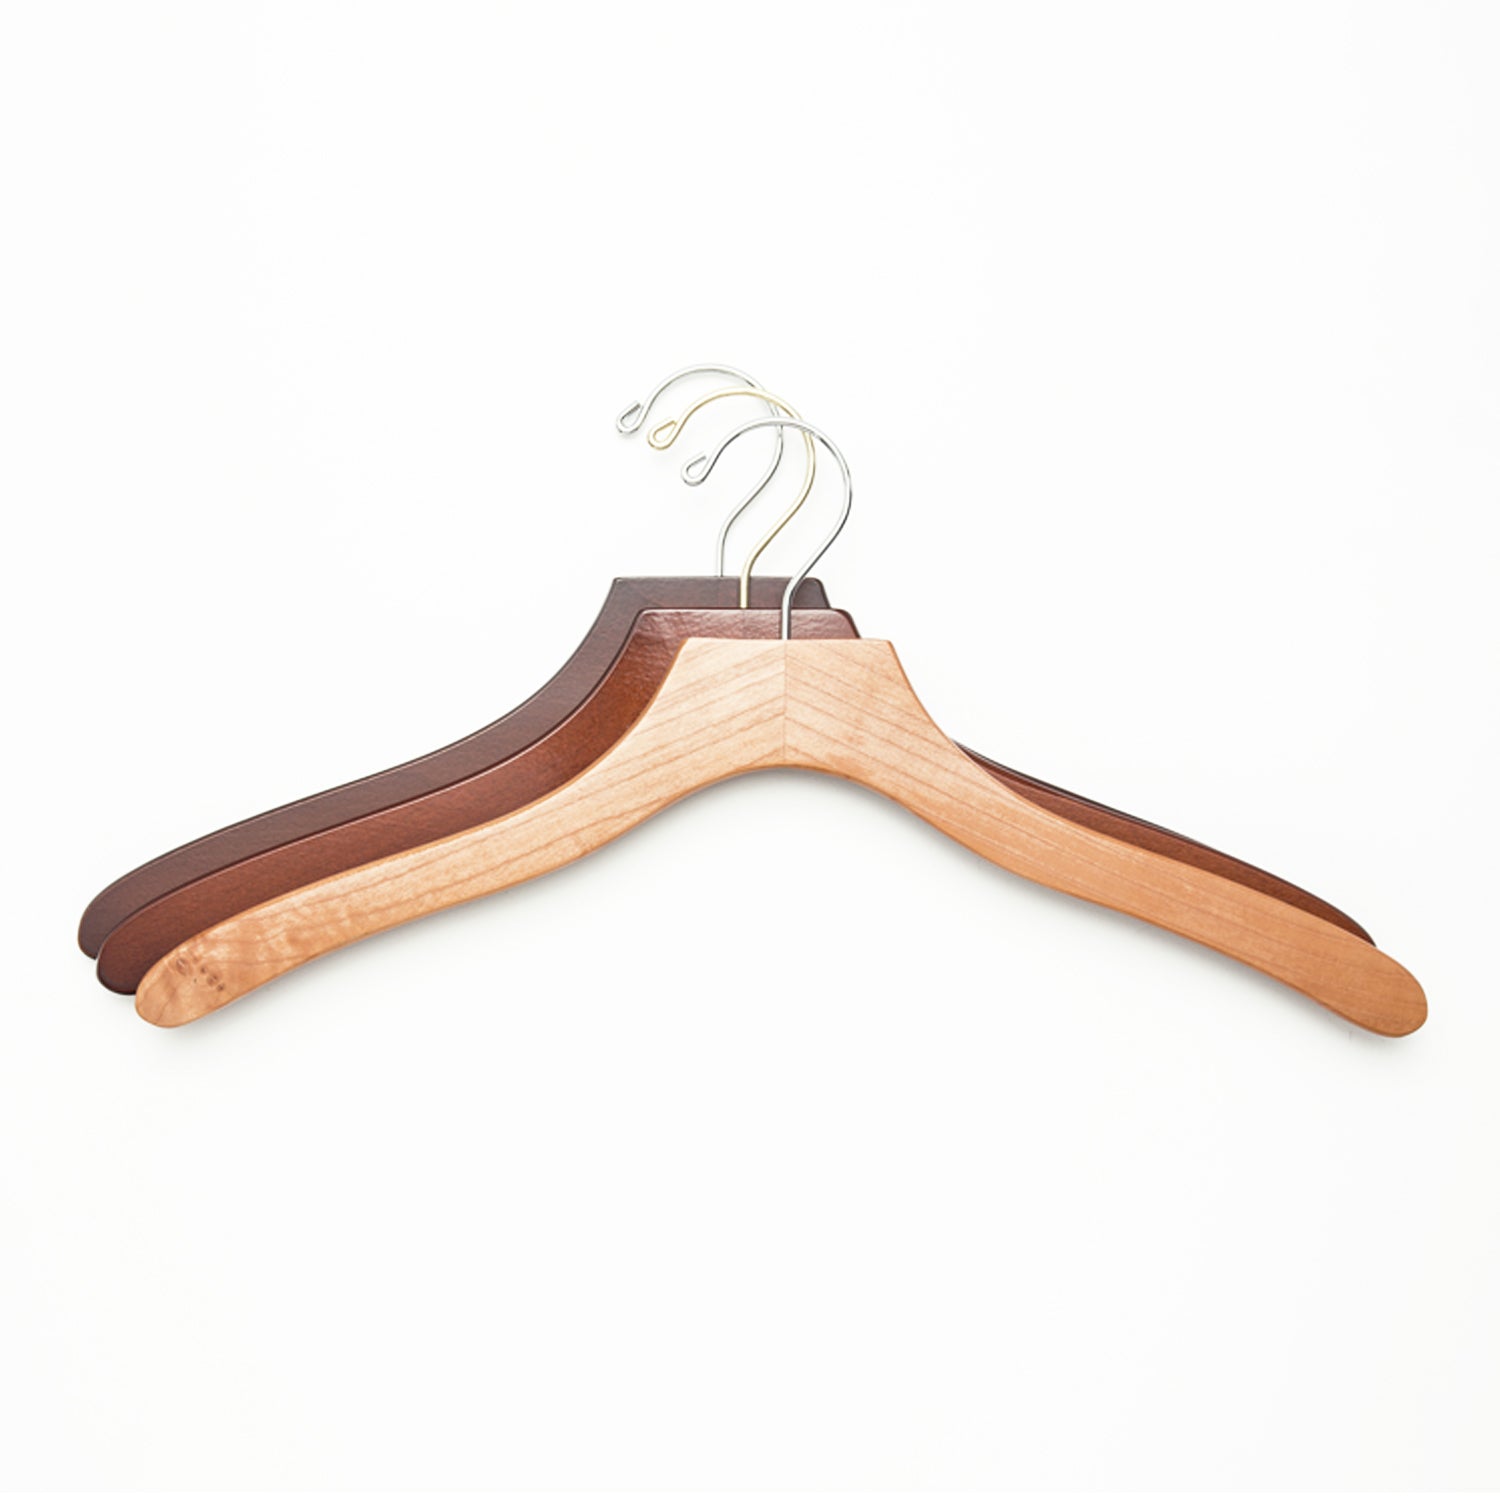 http://www.kirbyallison.com/cdn/shop/products/50-luxury-wooden-shirt-hanger-1.jpg?v=1689828905&width=2000